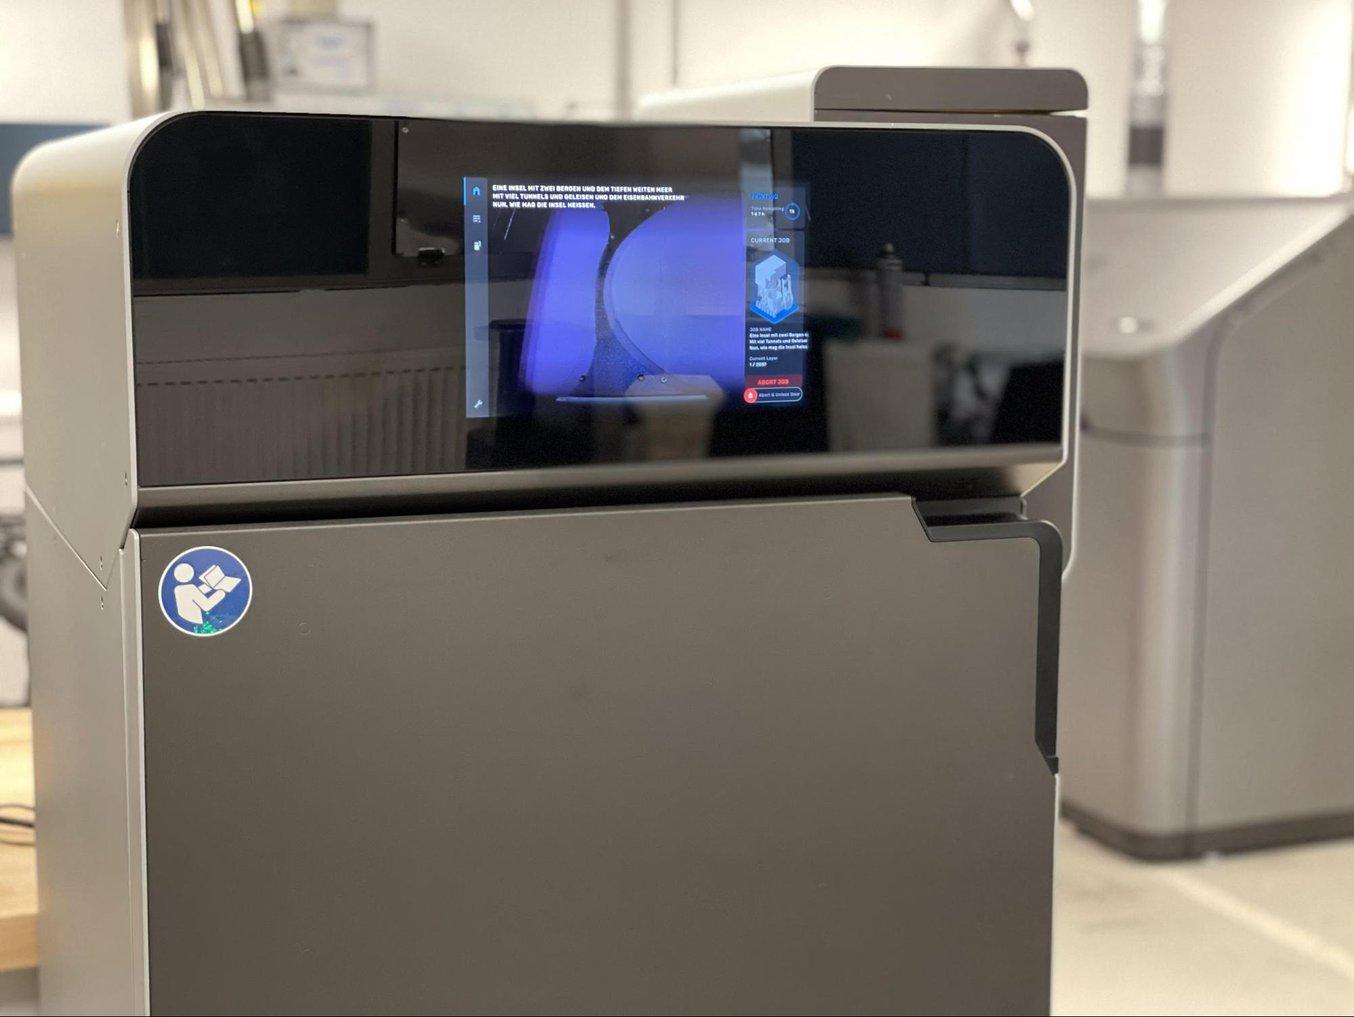 El centro de fabricación aditiva de Brose está equipado con casi todos los procesos de impresión 3D del mercado, incluida la incorporación más reciente, la Fuse 1.